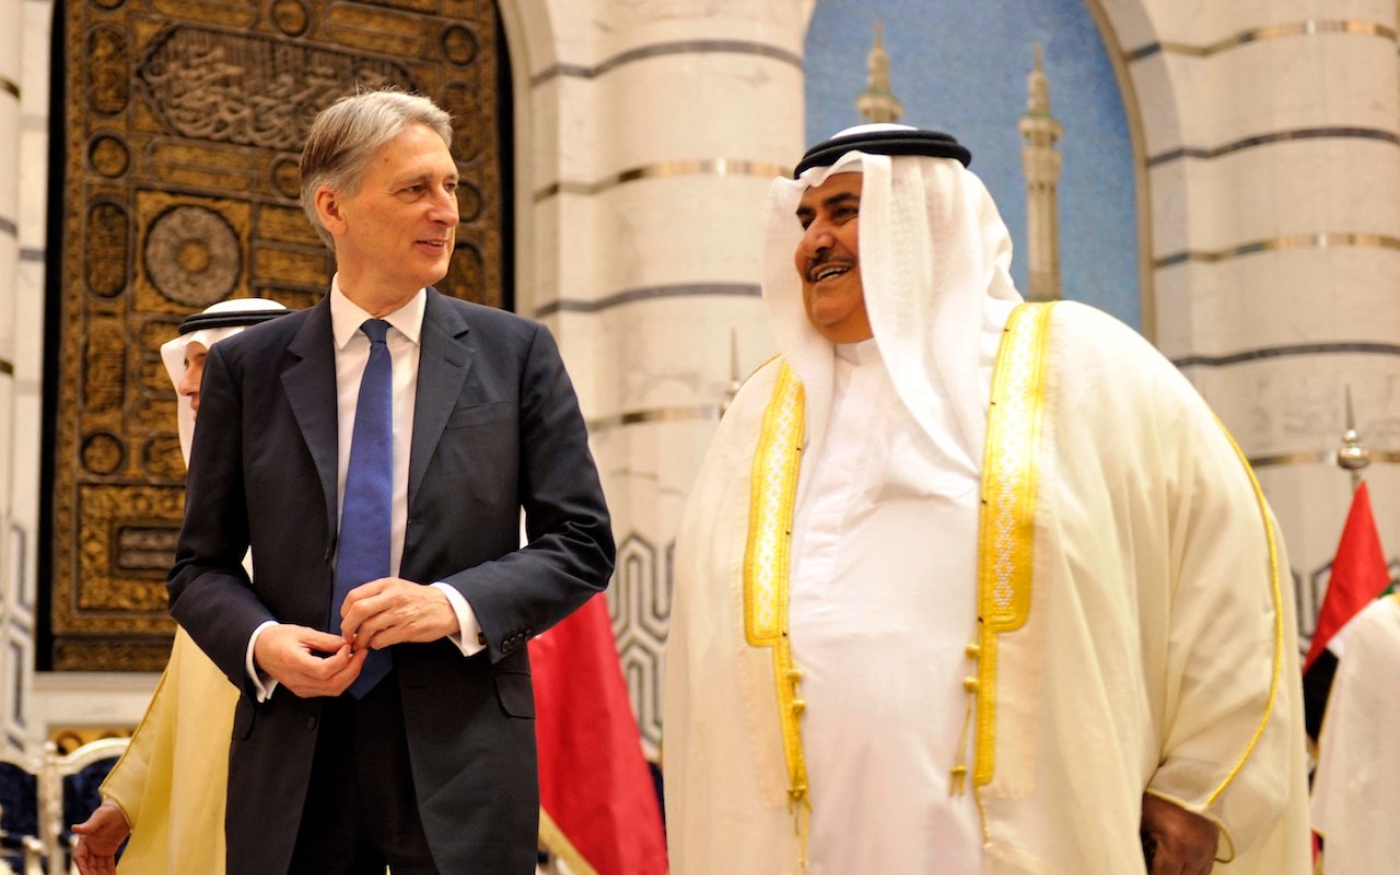 Philip Hammond (à gauche), alors secrétaire d’État britannique aux Affaires étrangères, s’entretient avec le ministre bahreïni des Affaires étrangères Khalid ben Ahmed al-Khalifa, en 2016 dans la ville saoudienne Djeddah (AFP)